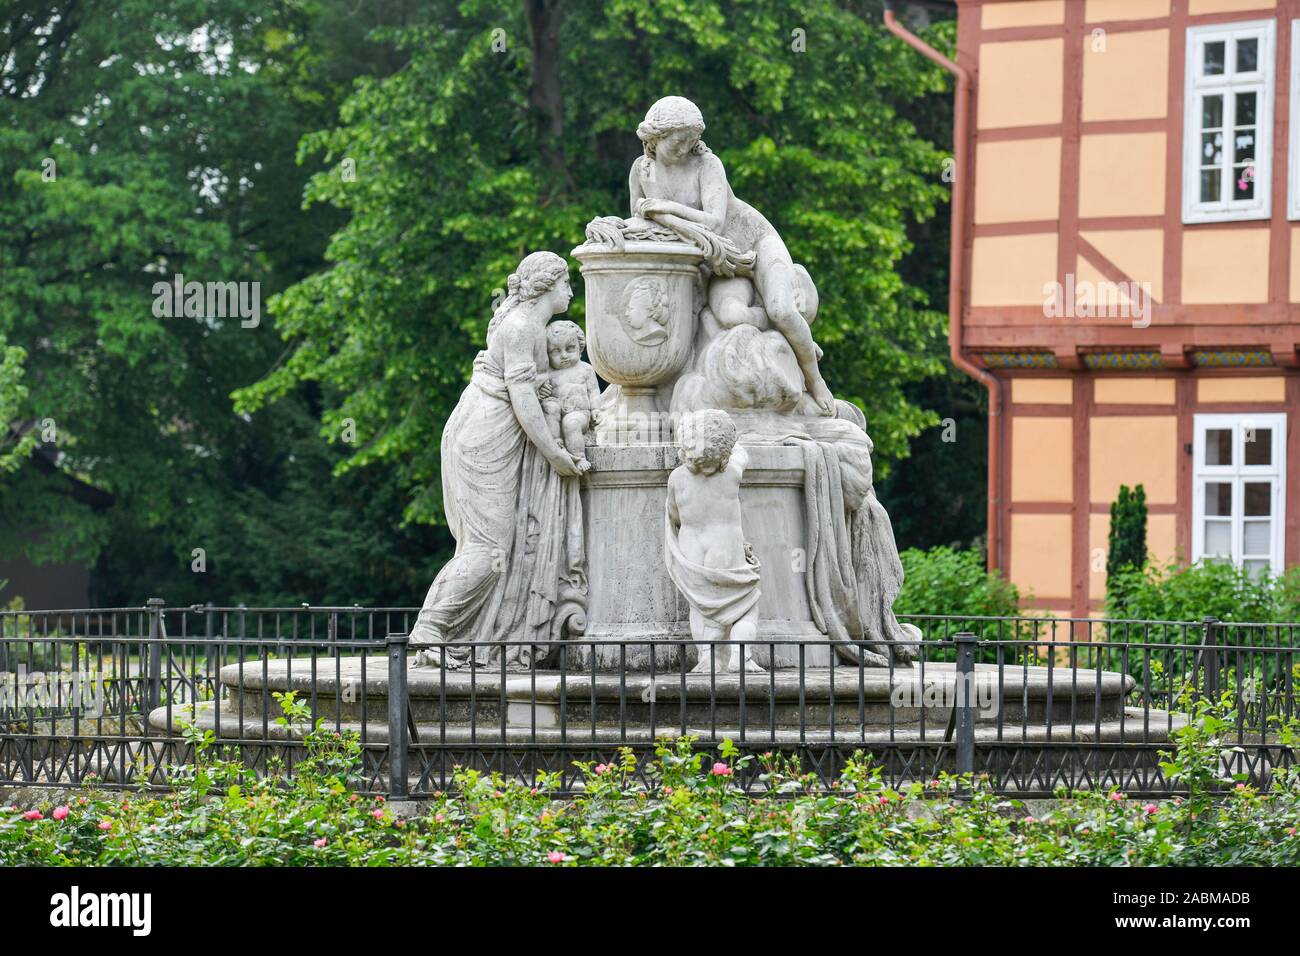 Caroline-Mathilde-Denkmal am Osteingang, Französischer Garten, Celle, Niedersachsen, Deutschland Stock Photo